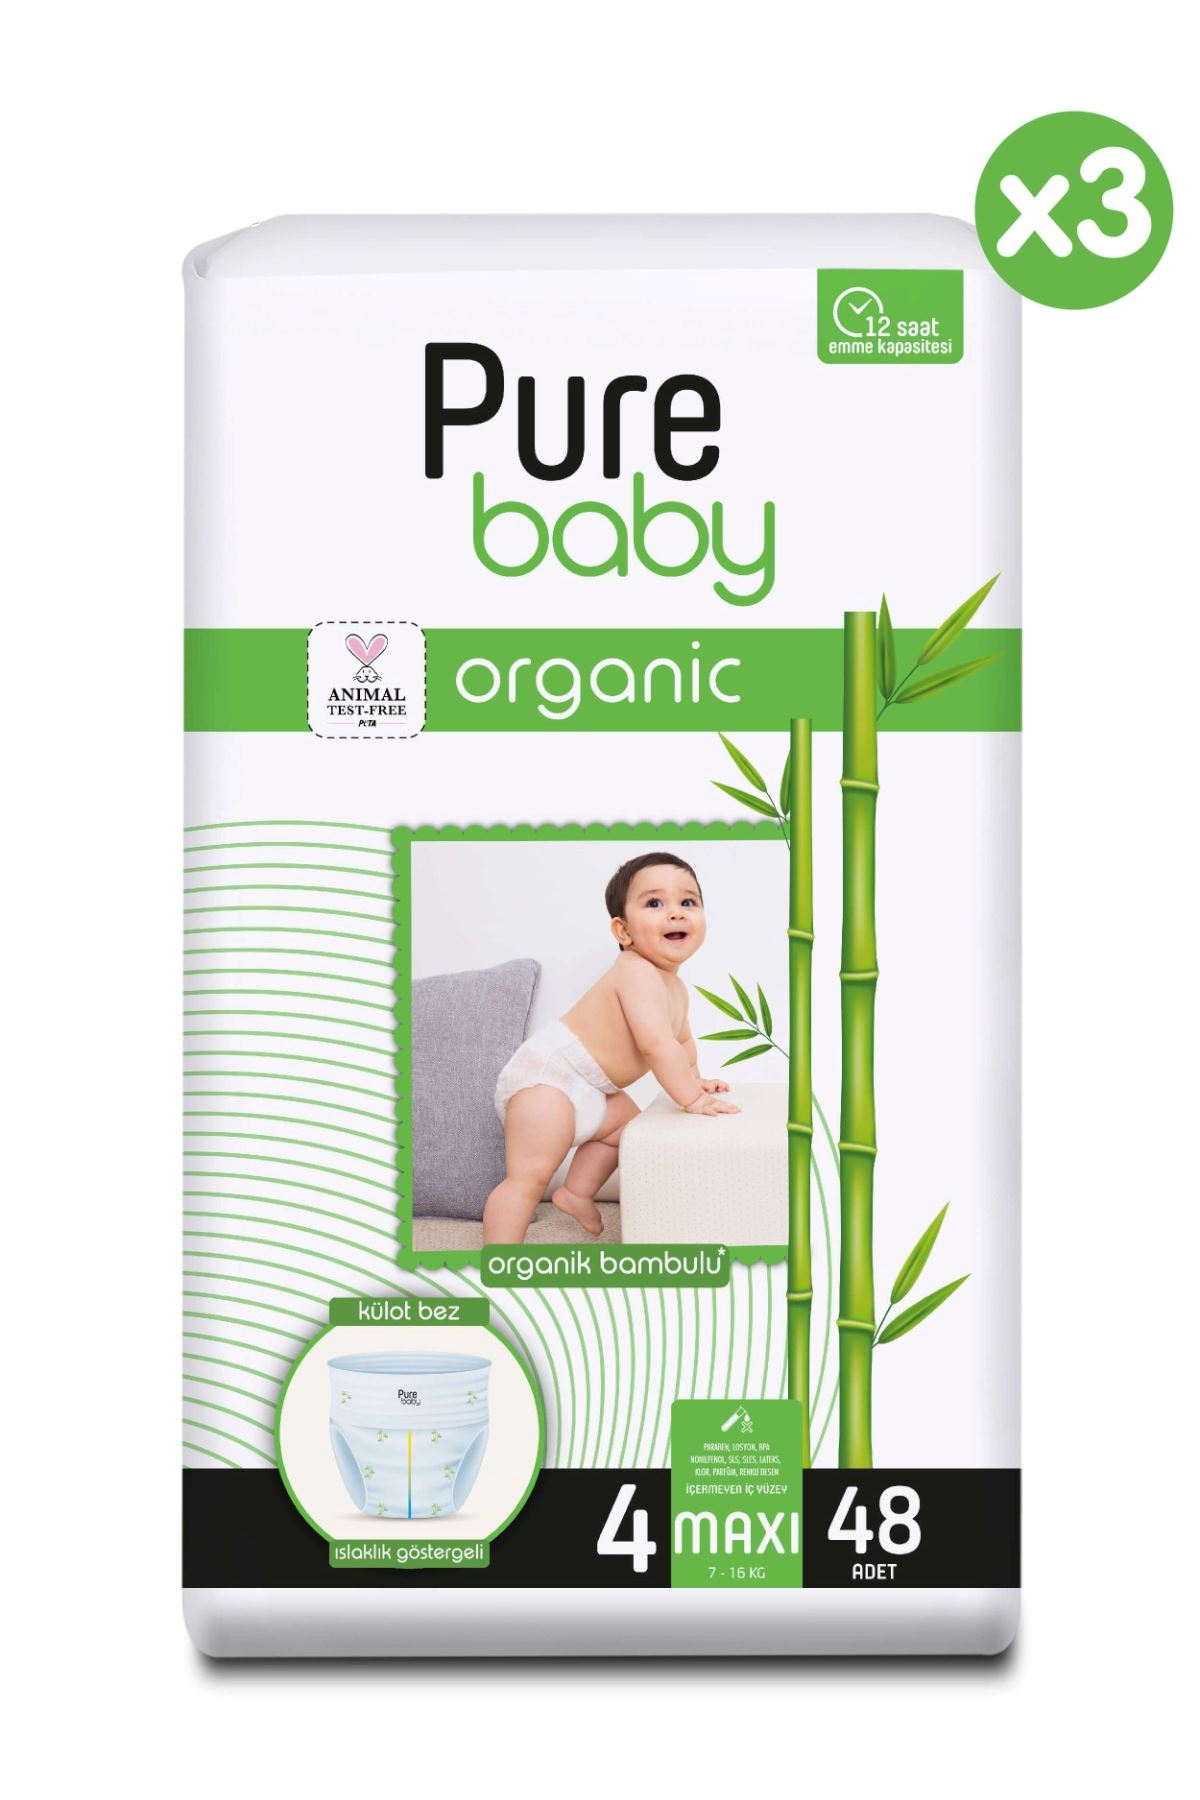 Pure Baby Organik Bambu Özlü Külot Bez 3'Lü Paket 4 Numara Maxi 144 Adet